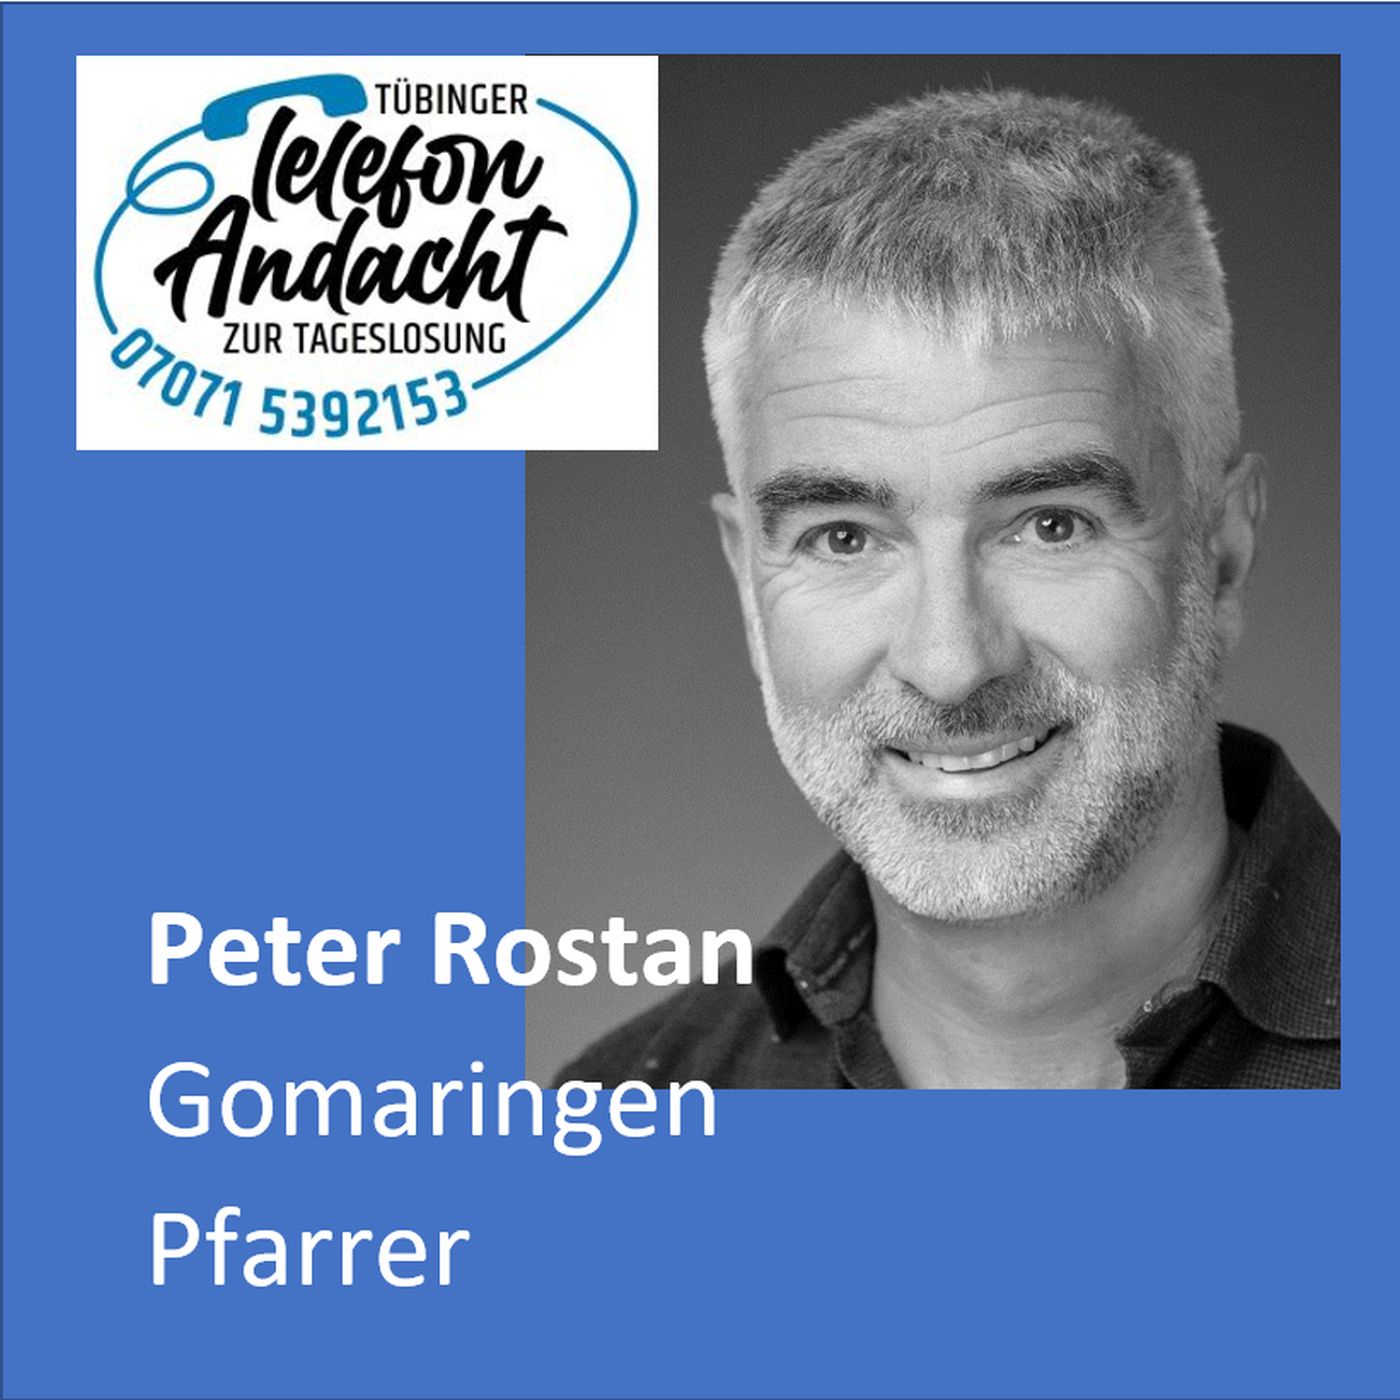 24 07 13 Peter Rostan